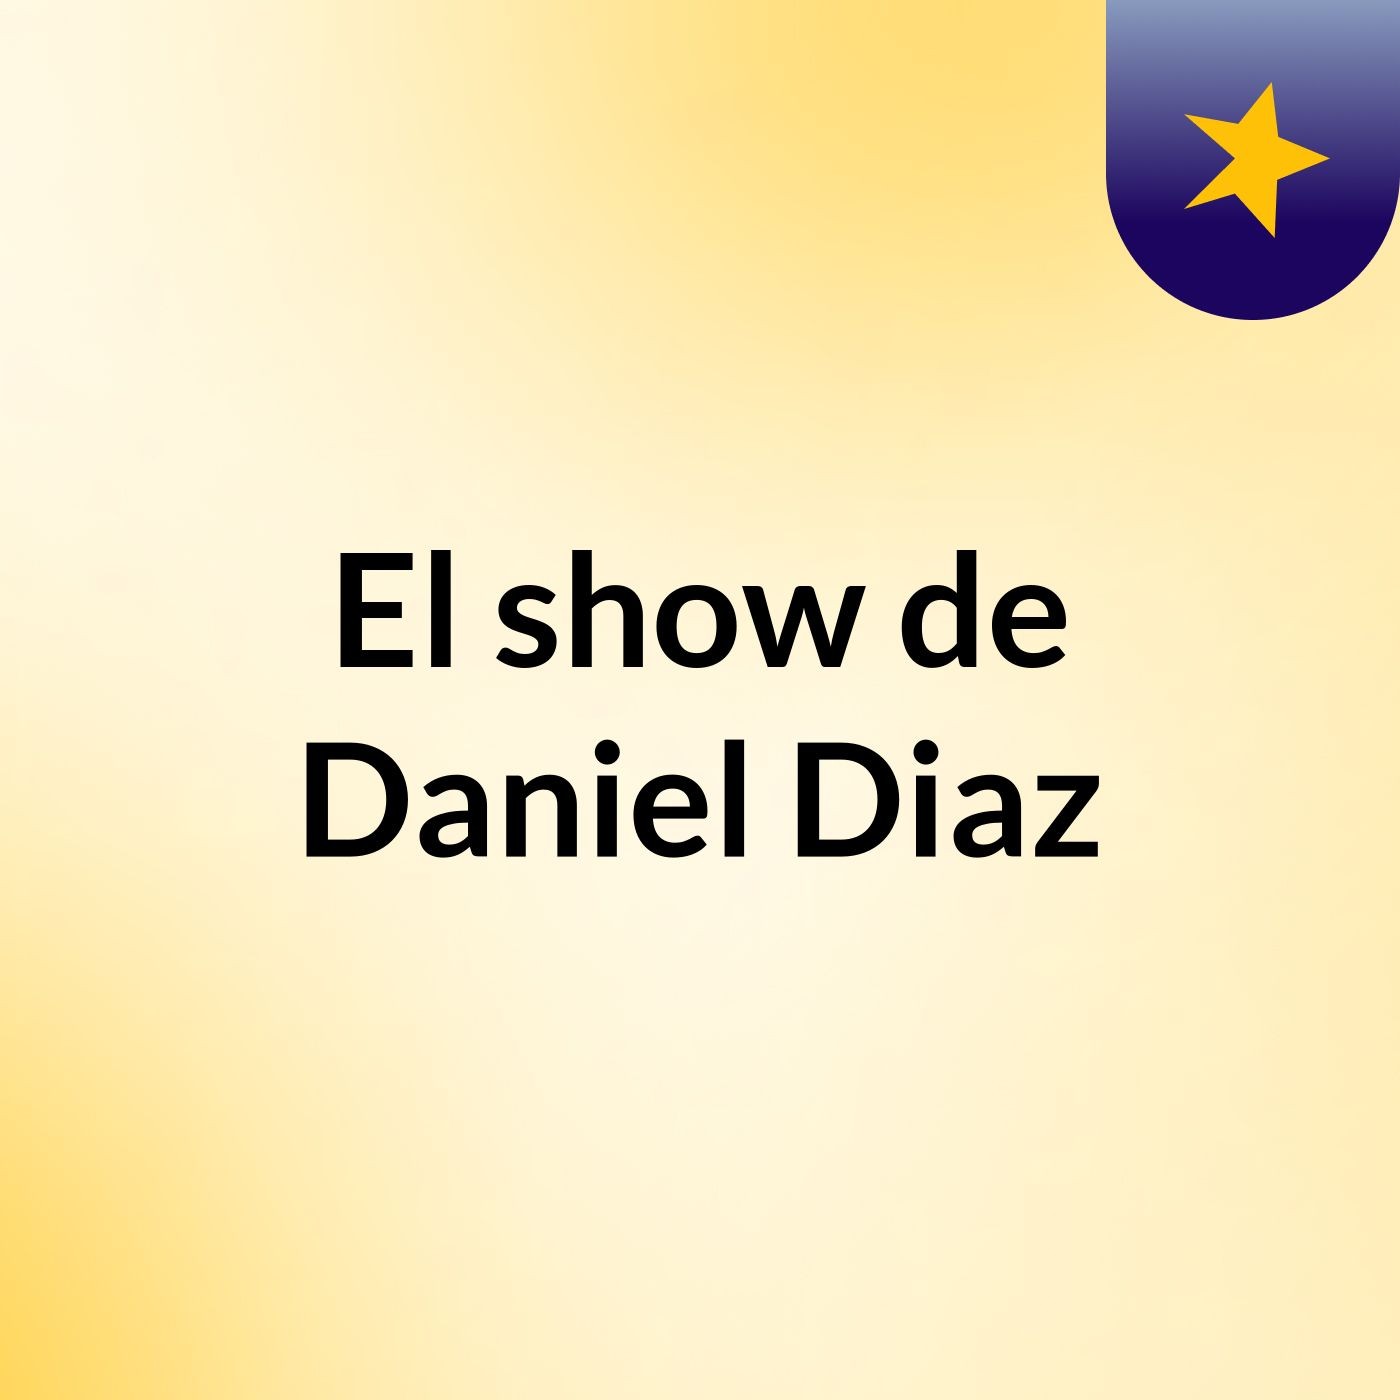 Episodio 2 - El show de Daniel Diaz